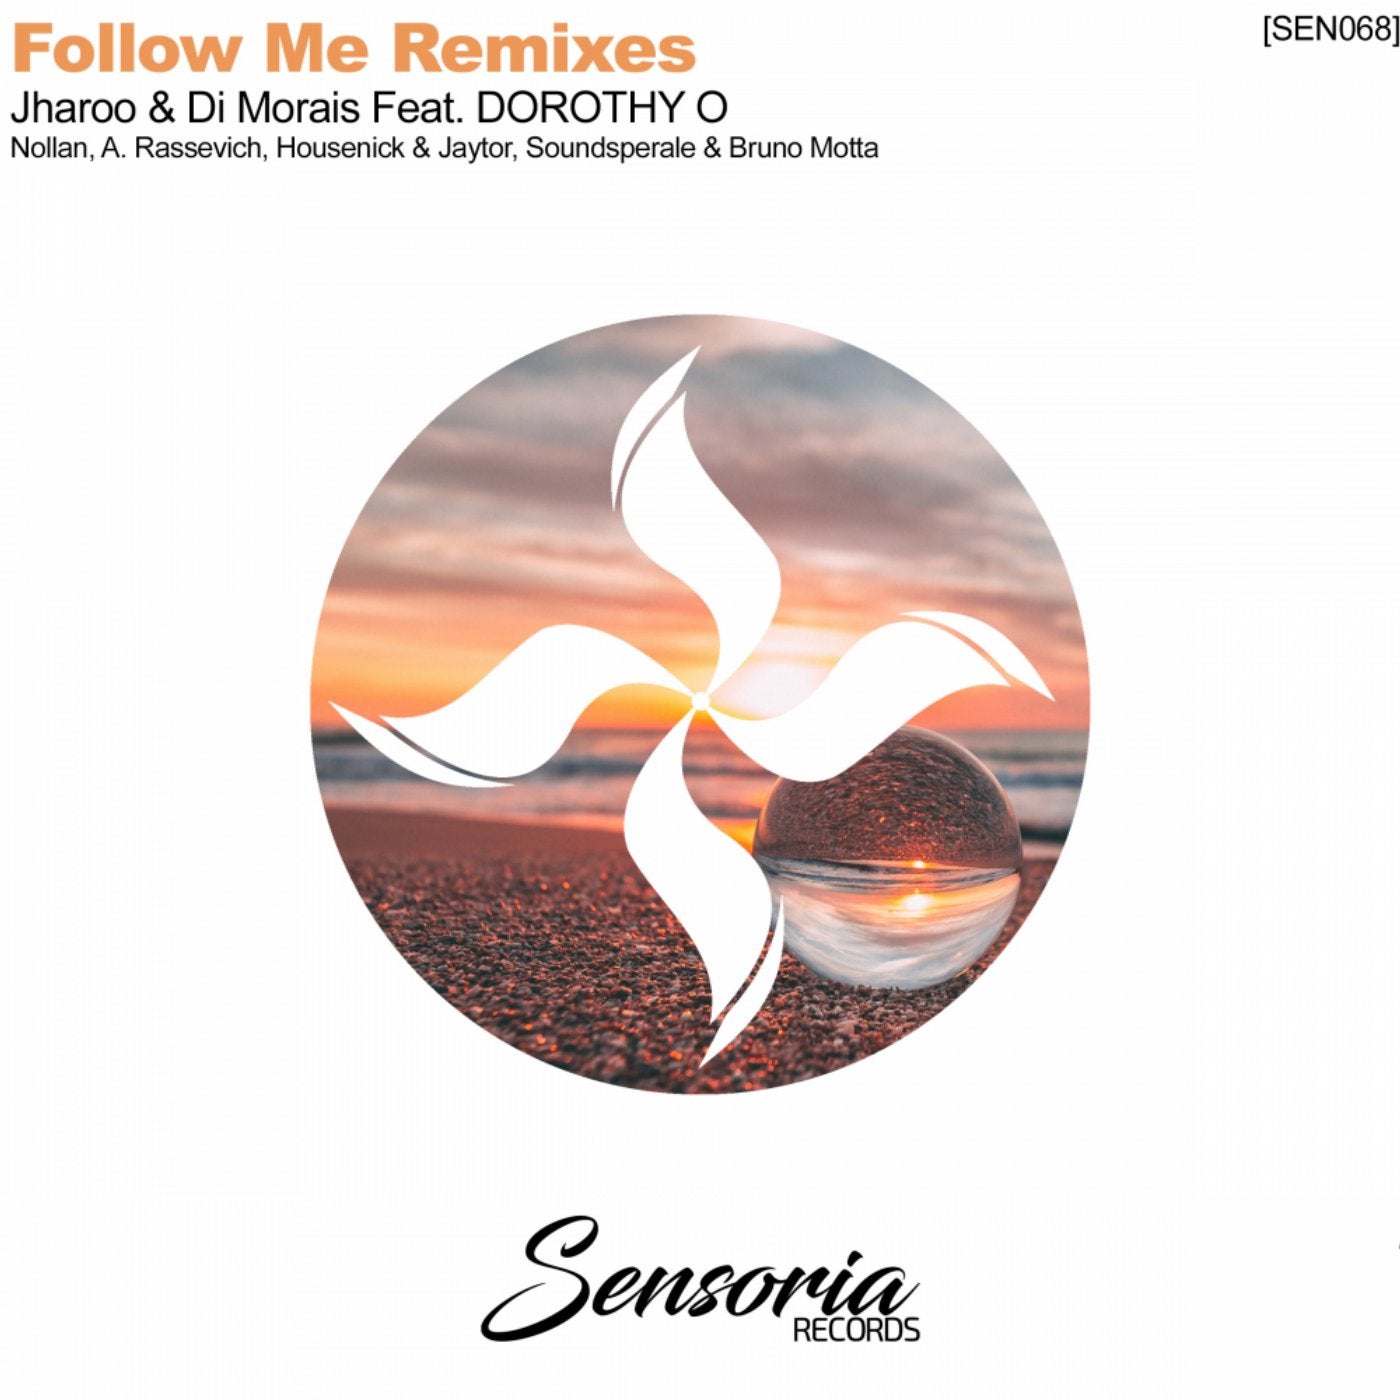 Follow Me Remixes